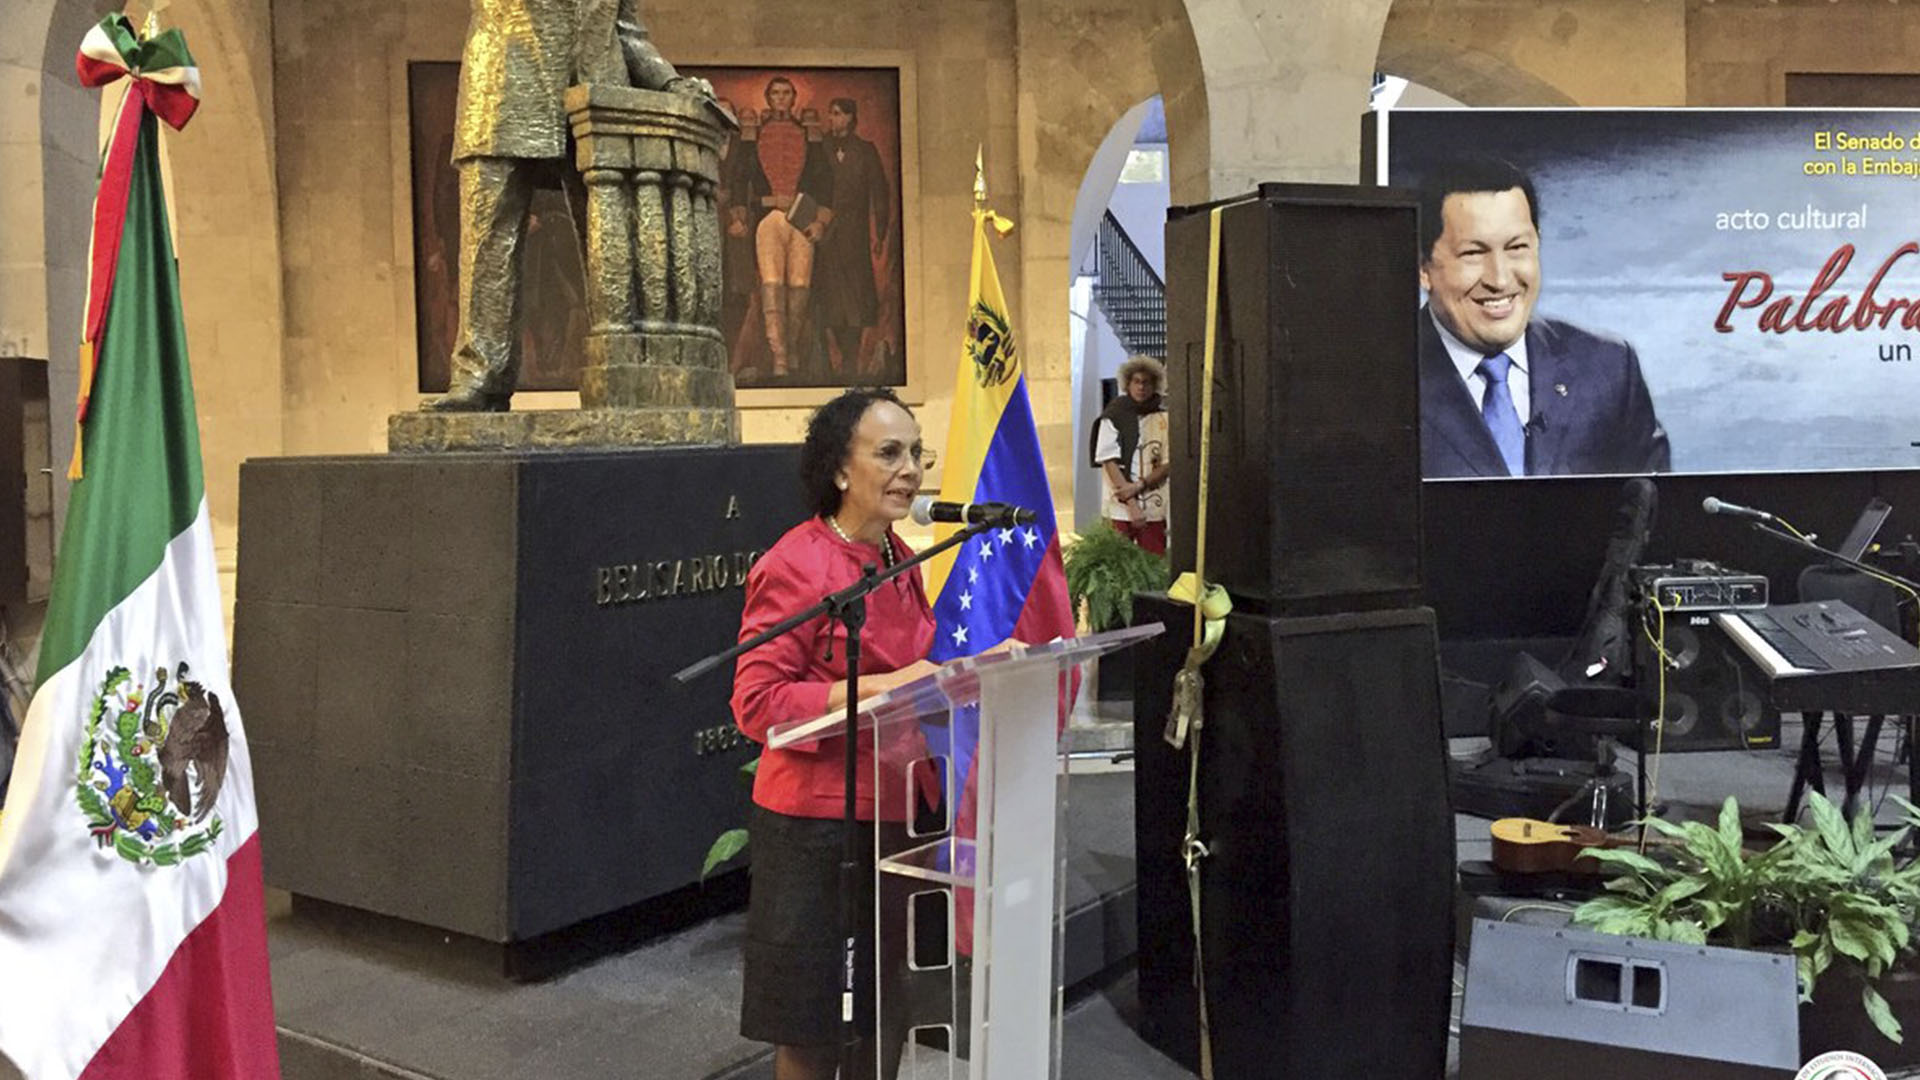 La carta iba dirigida a la embajadora de Venezuela en México, María de Lourdes Urbaneja (FOTO: @CGBSenado)